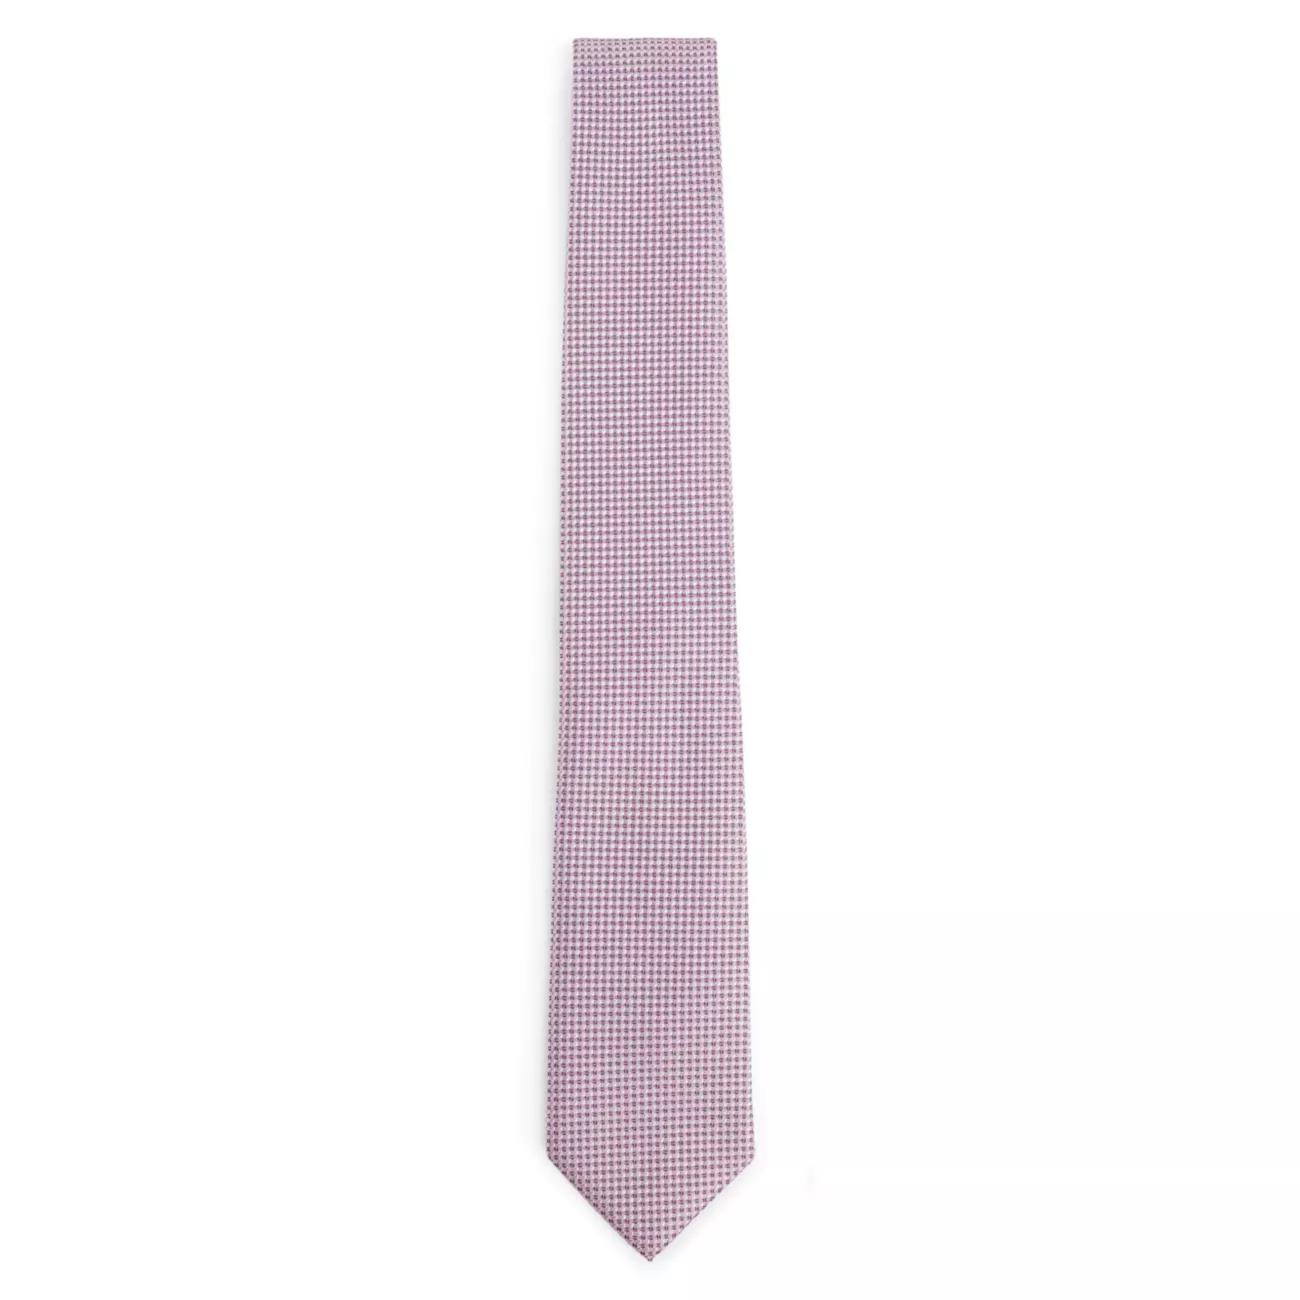 Шелковый галстук с жаккардовым микроузором BOSS